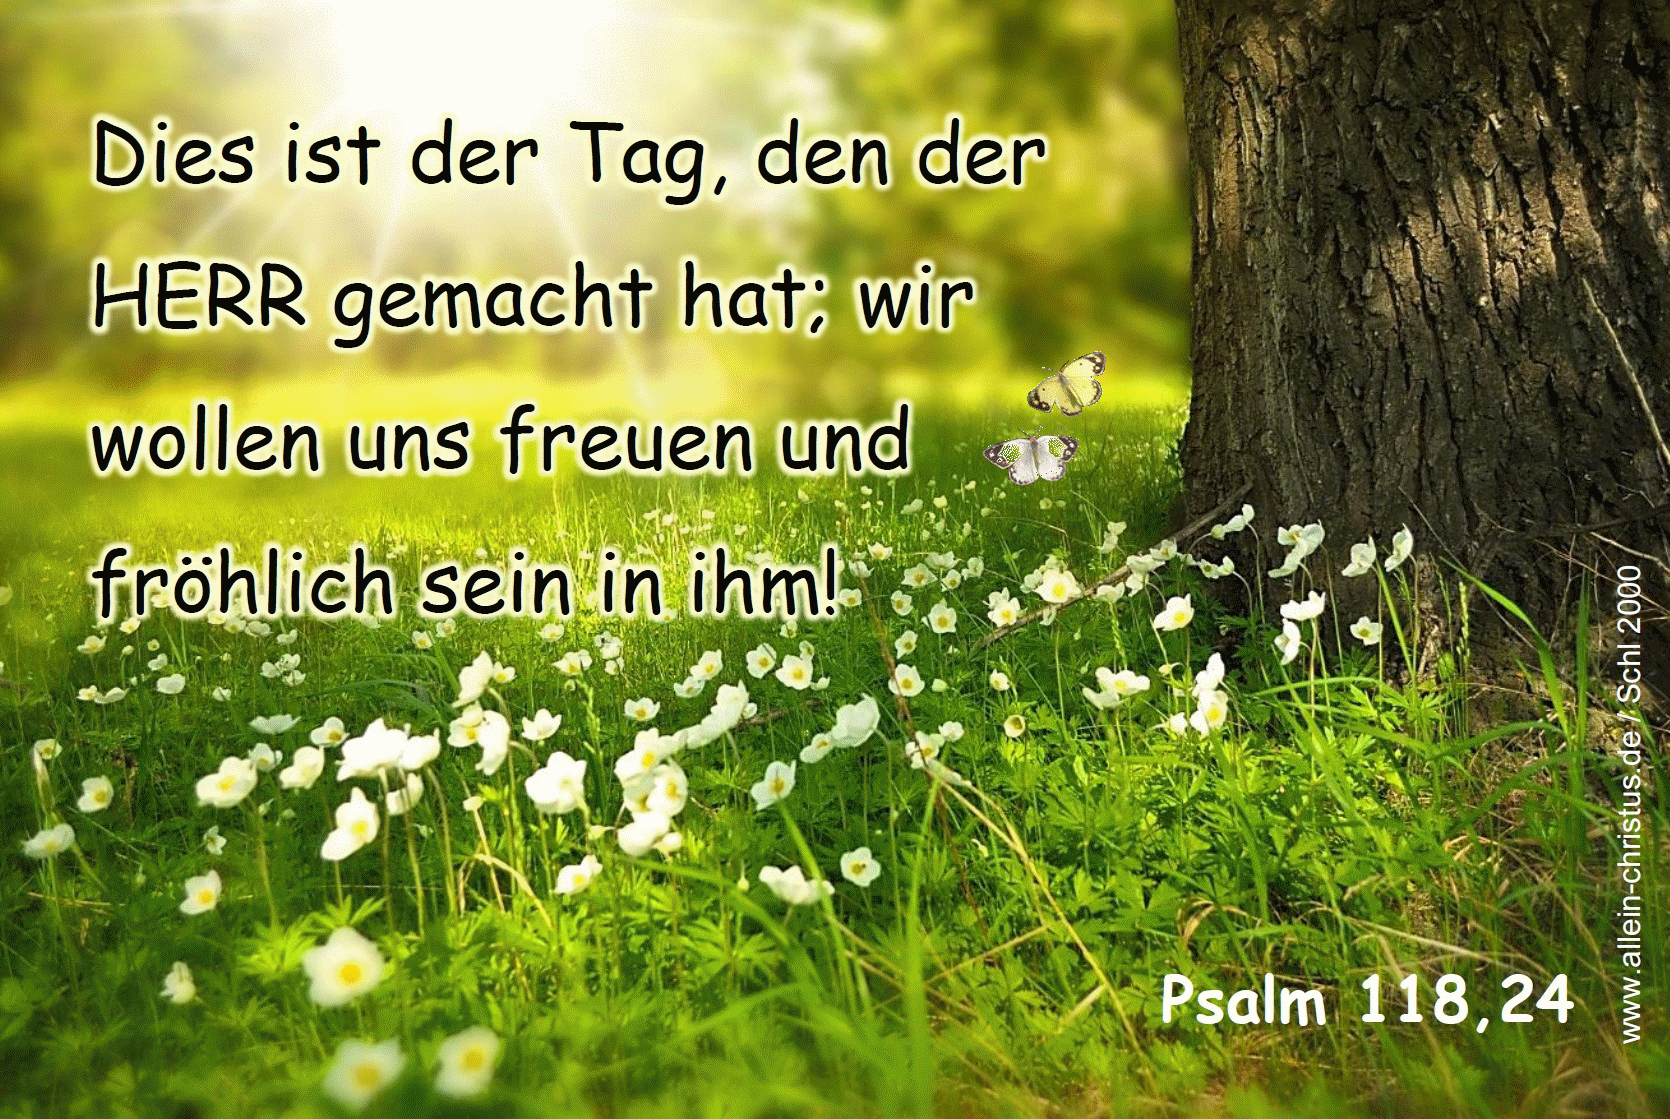 Psalm 118,24 - Dies ist der Tag, den der Herr gemacht hat, wir wollen uns freuen und fröhlich sein in ihm